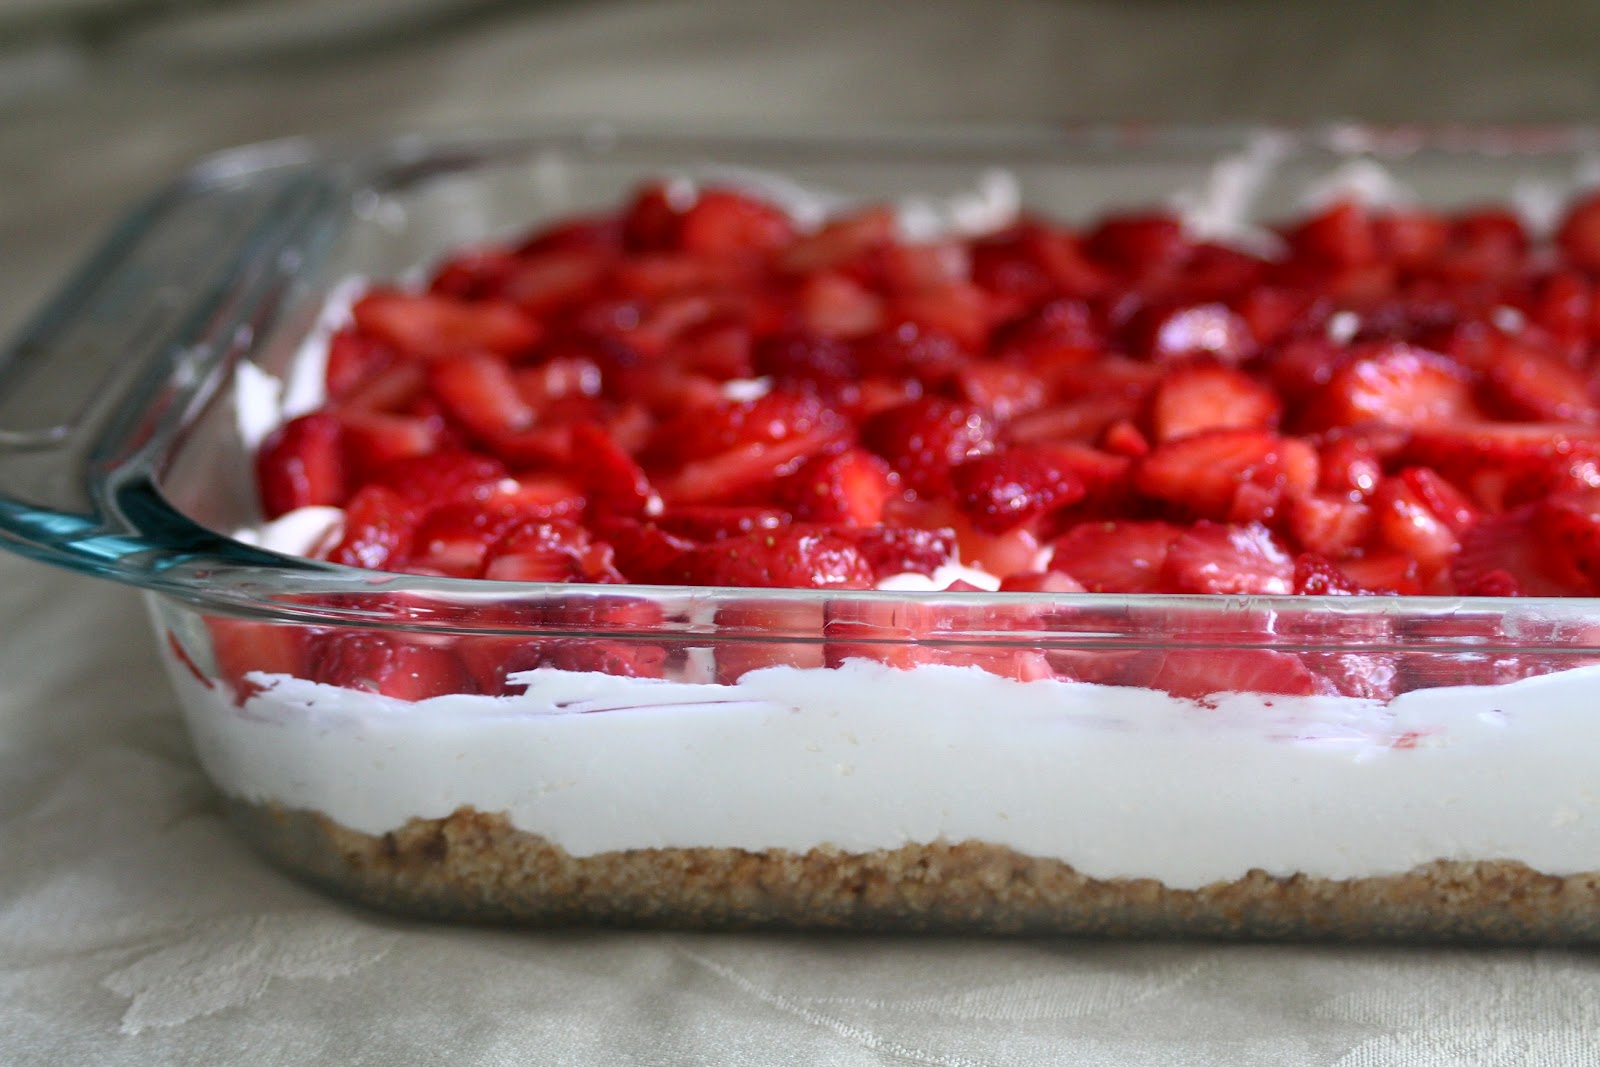 Baker Homemaker Sensational Strawberry Cream Dessert